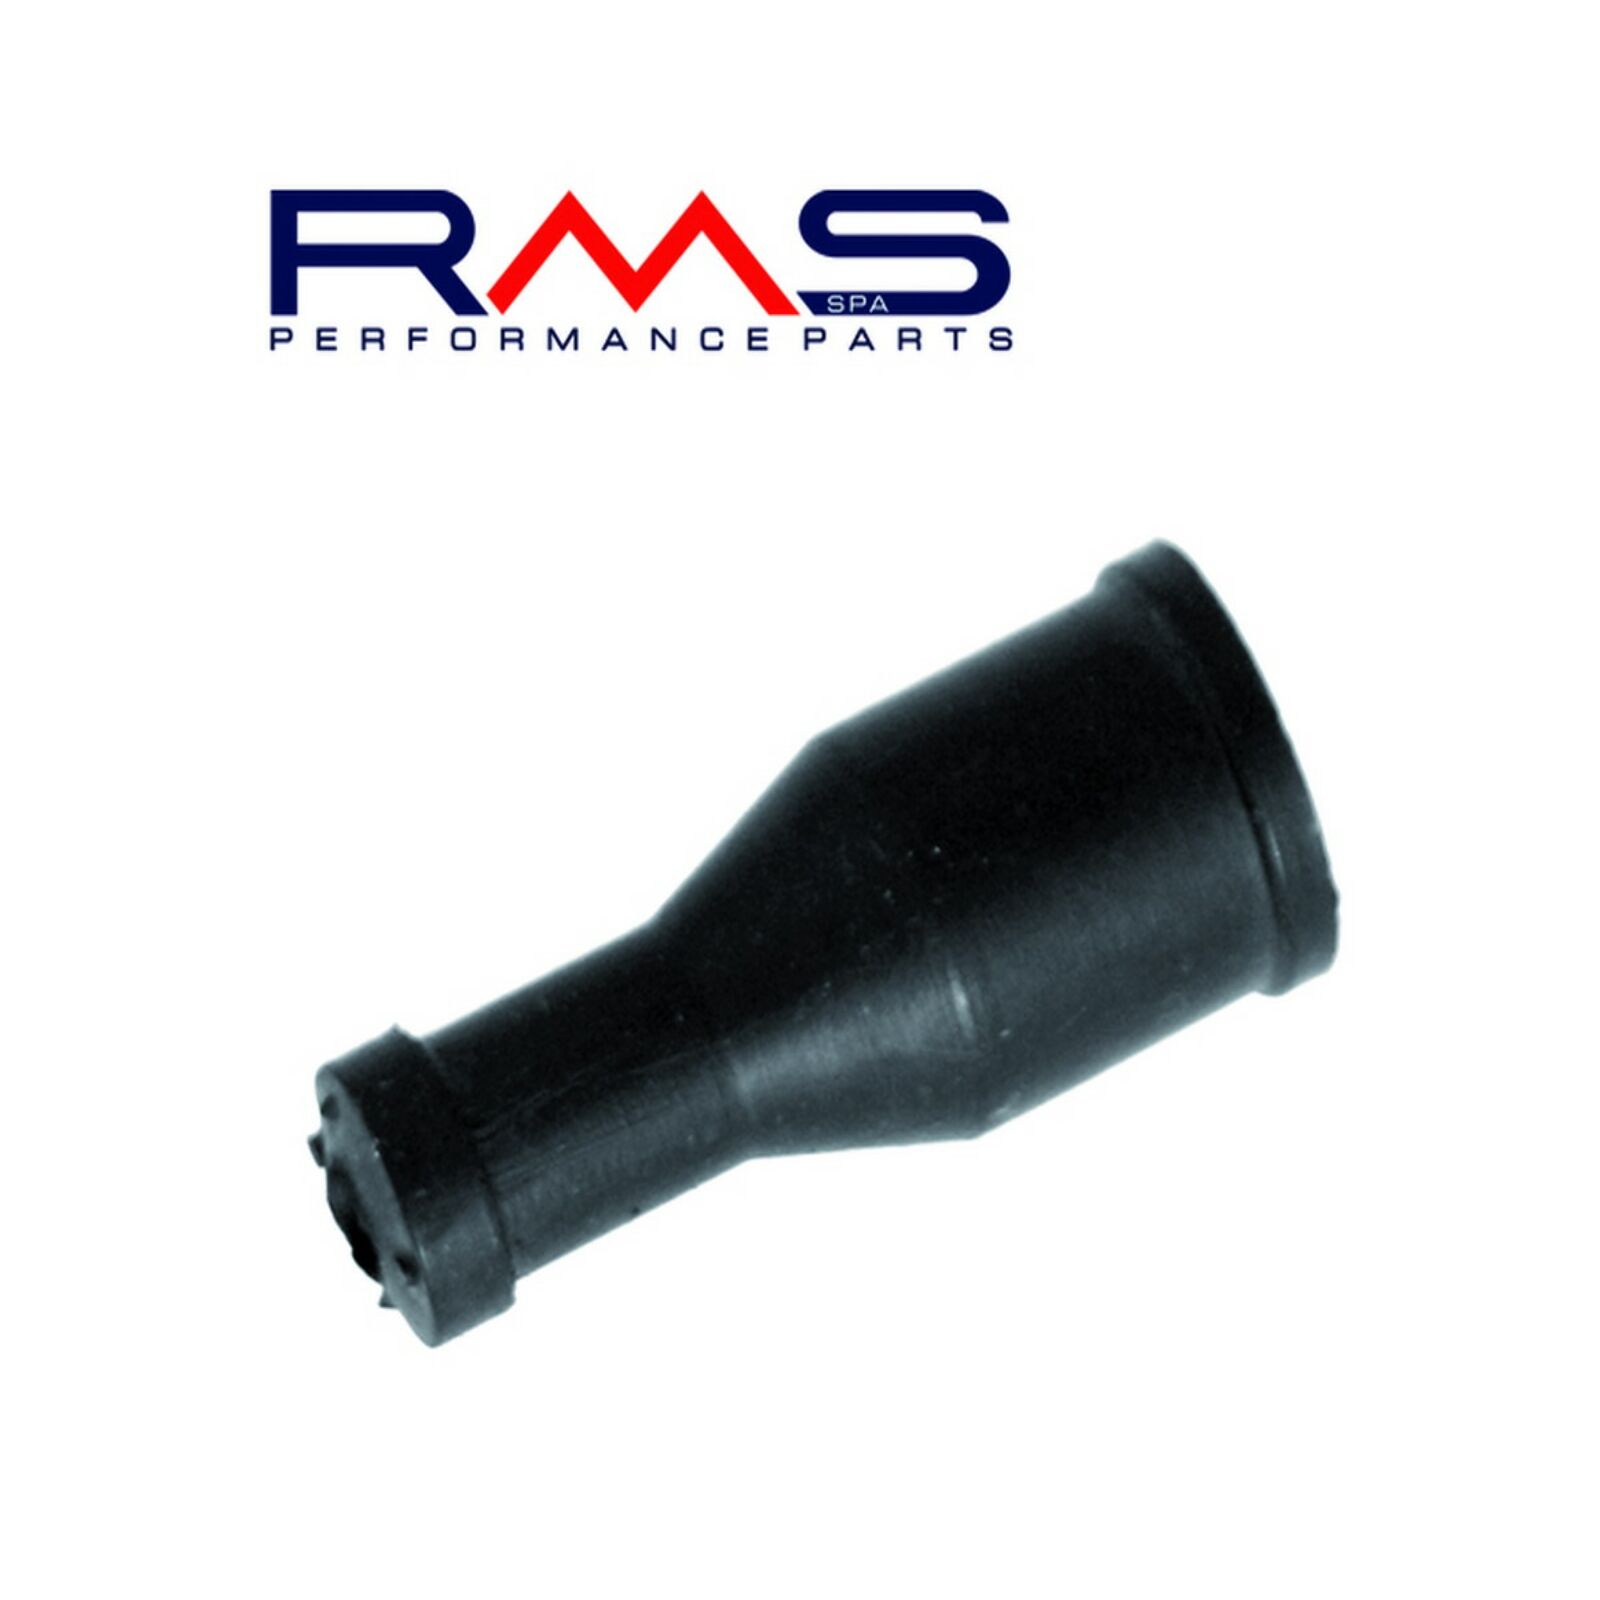 Obrázek produktu Coil cap RMS 121830560